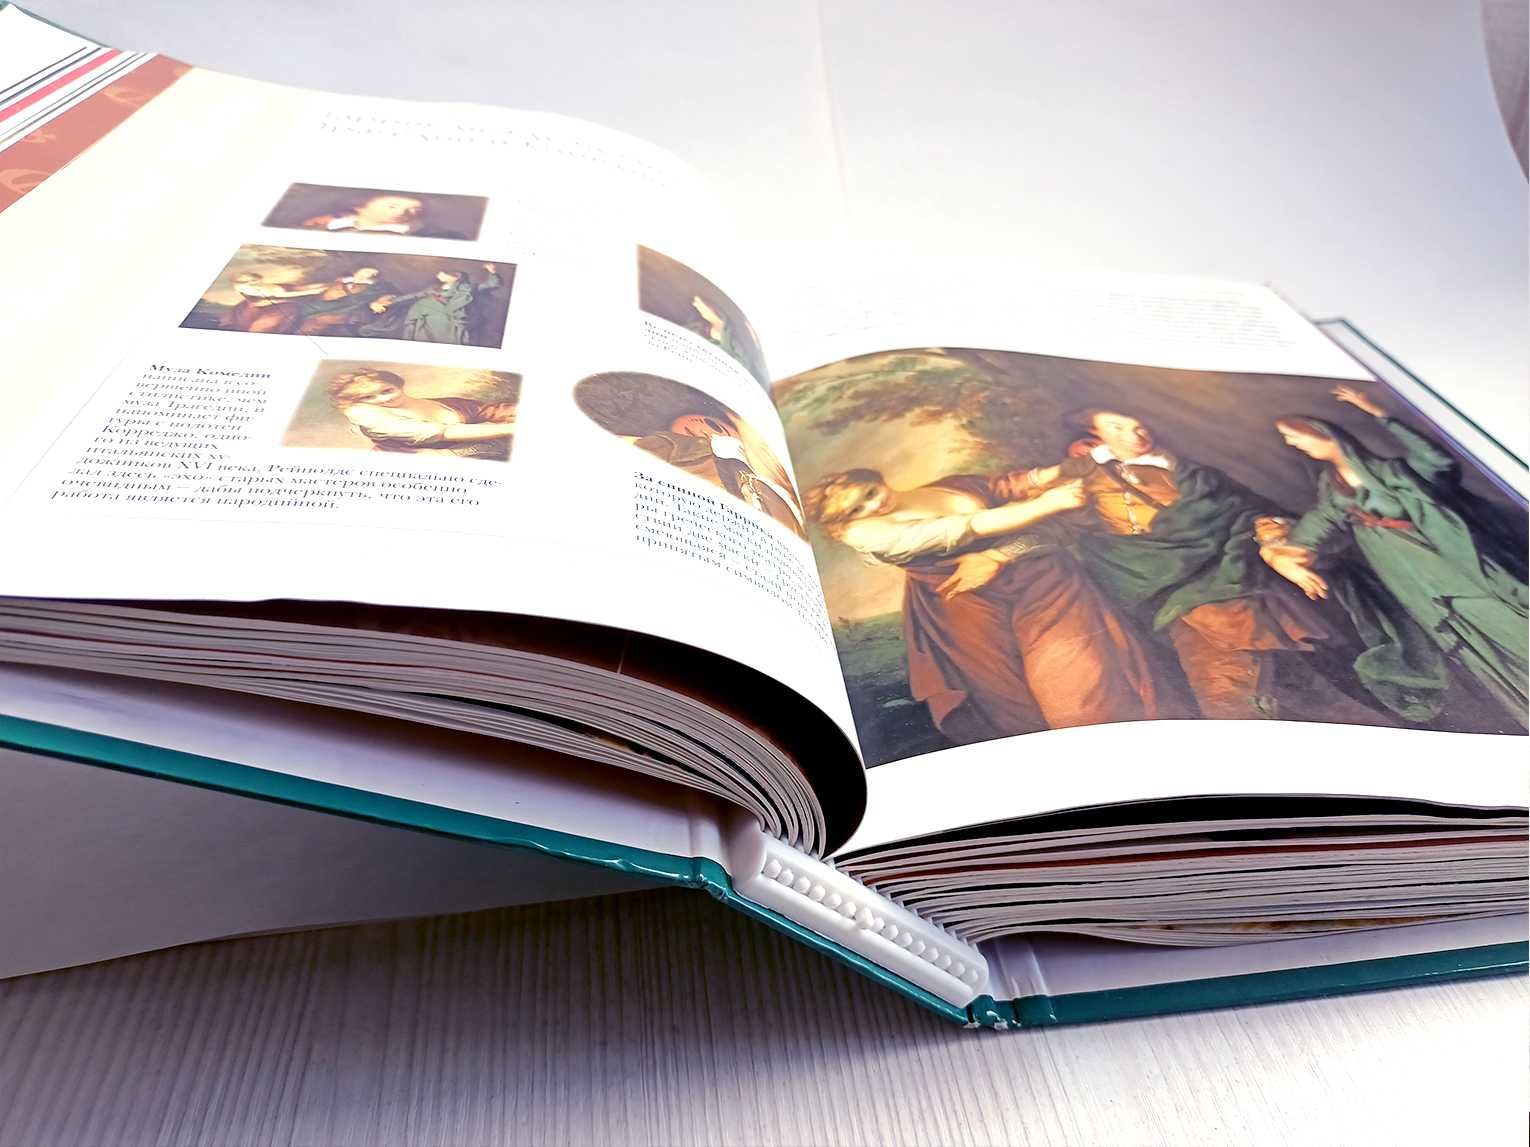 Еженедельный журнал "Художественная галерея" в 4 томной коллекции.